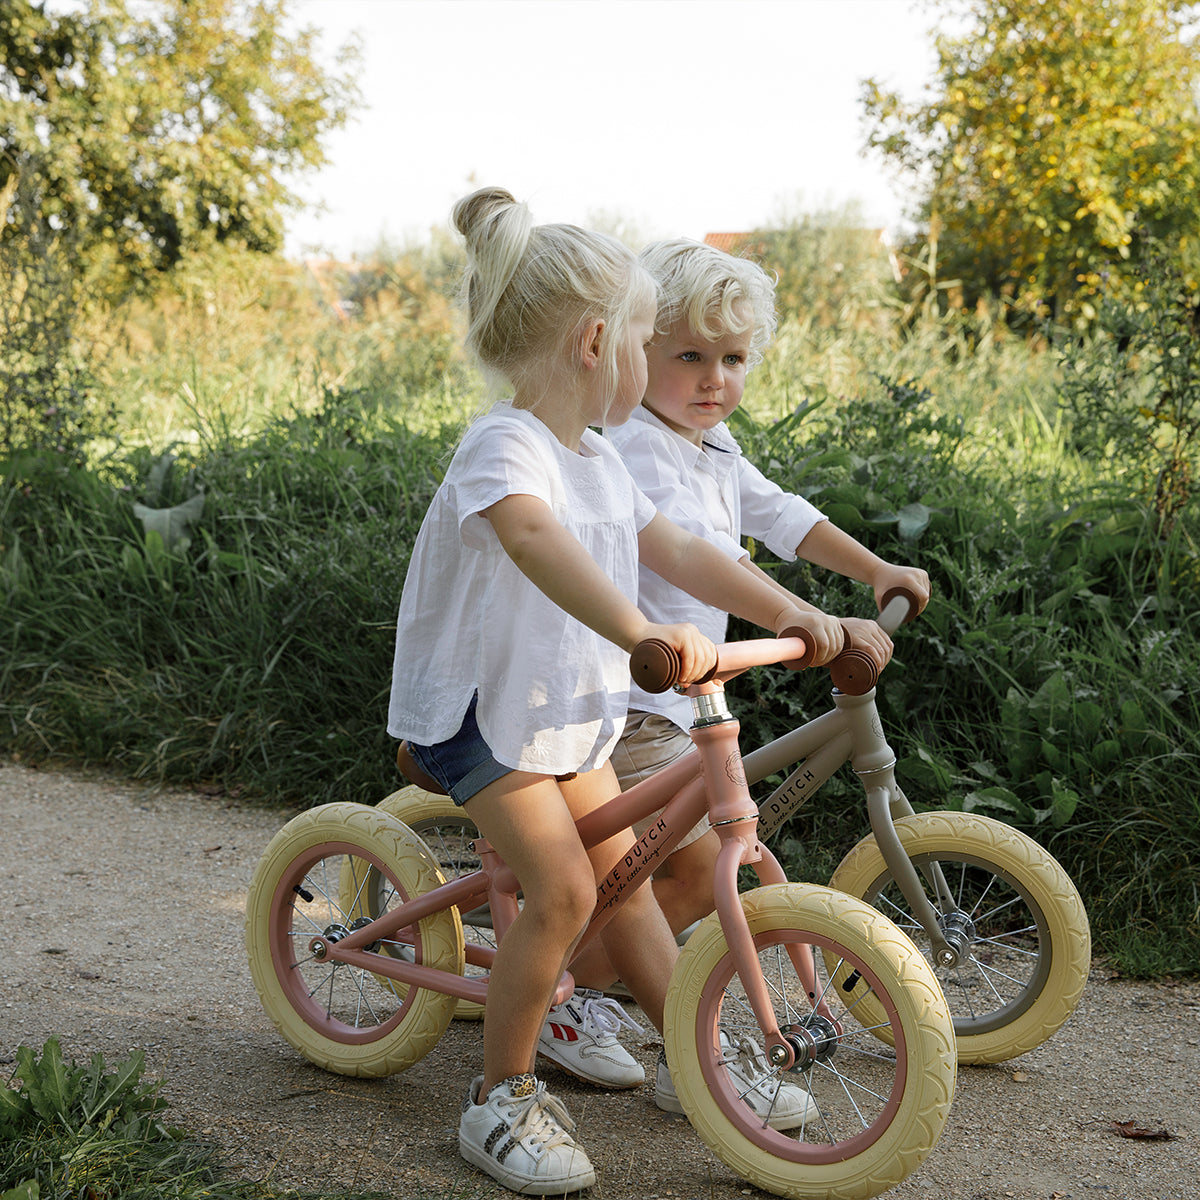 Laat je kindje eerste stapjes richting het leren fietsen zetten met een prachtig 12-inch loopfietsje van Little Dutch. Het lieve fietsje bevordert de motorische ontwikkeling van je kind en zorgt voor speelplezier. VanZus